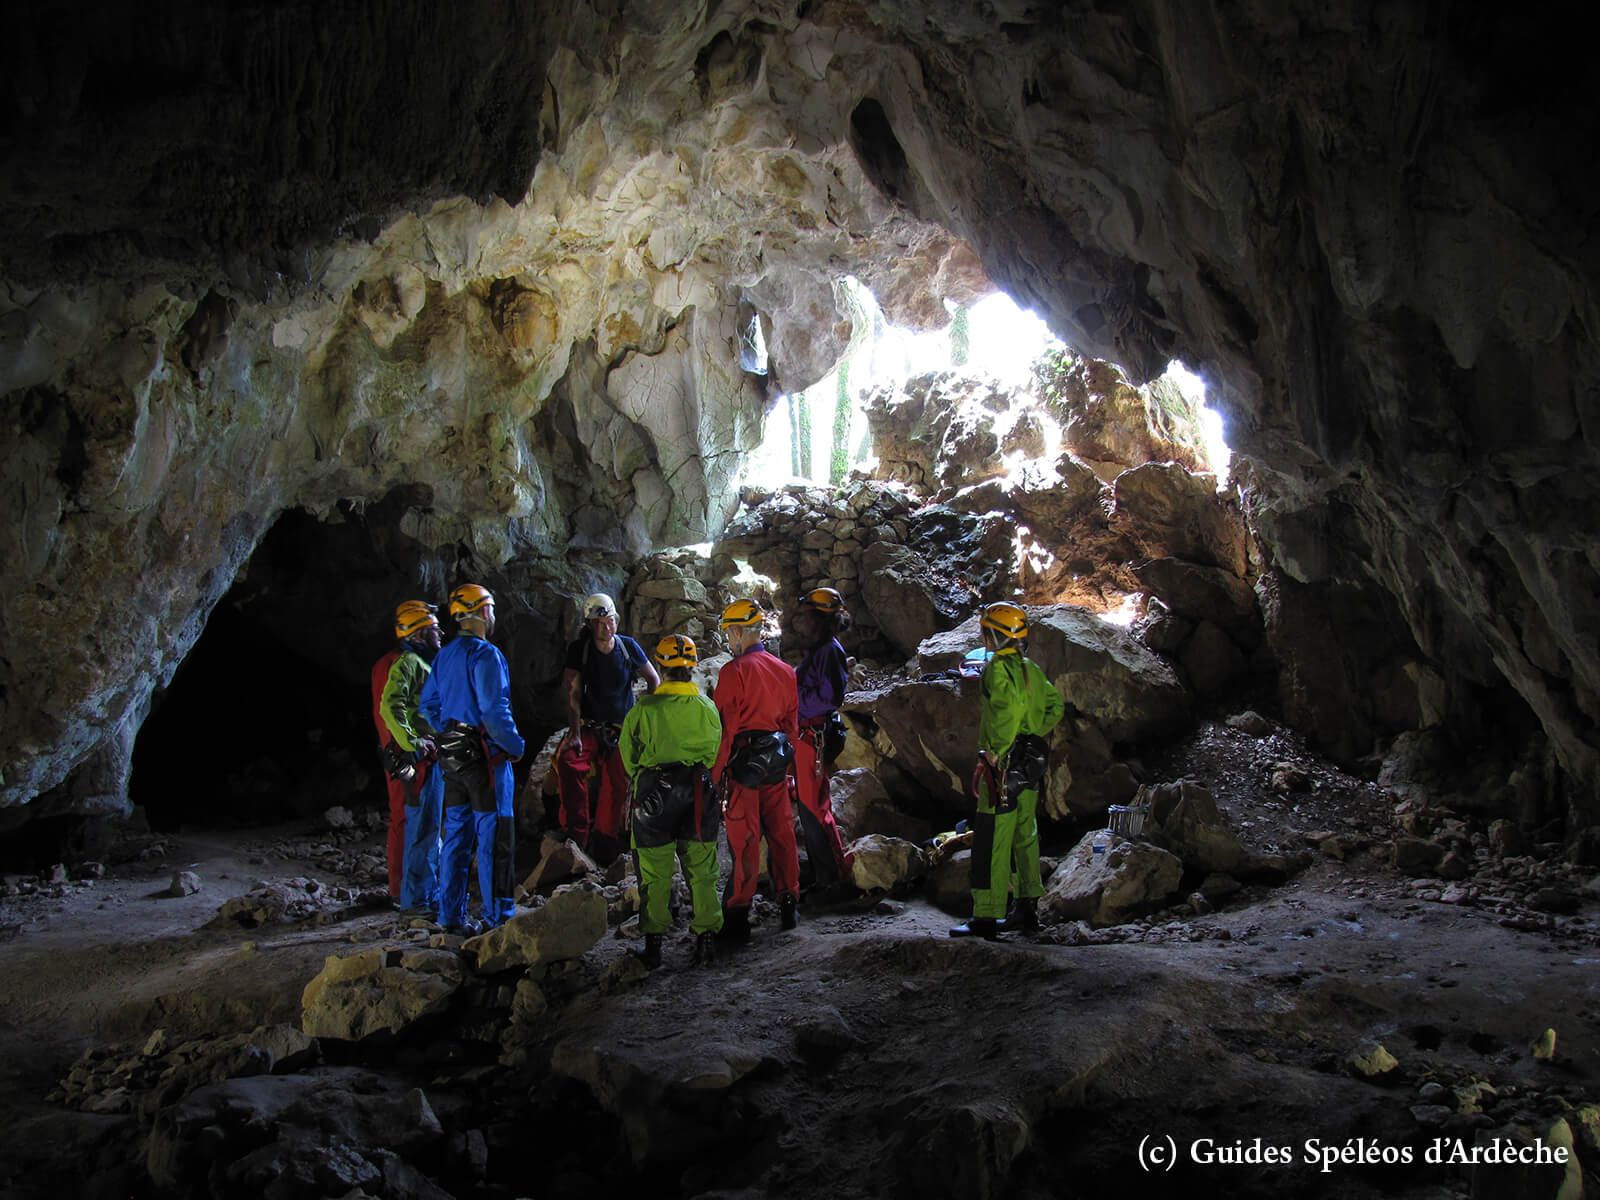 Grotte de chasserou - Ardèche